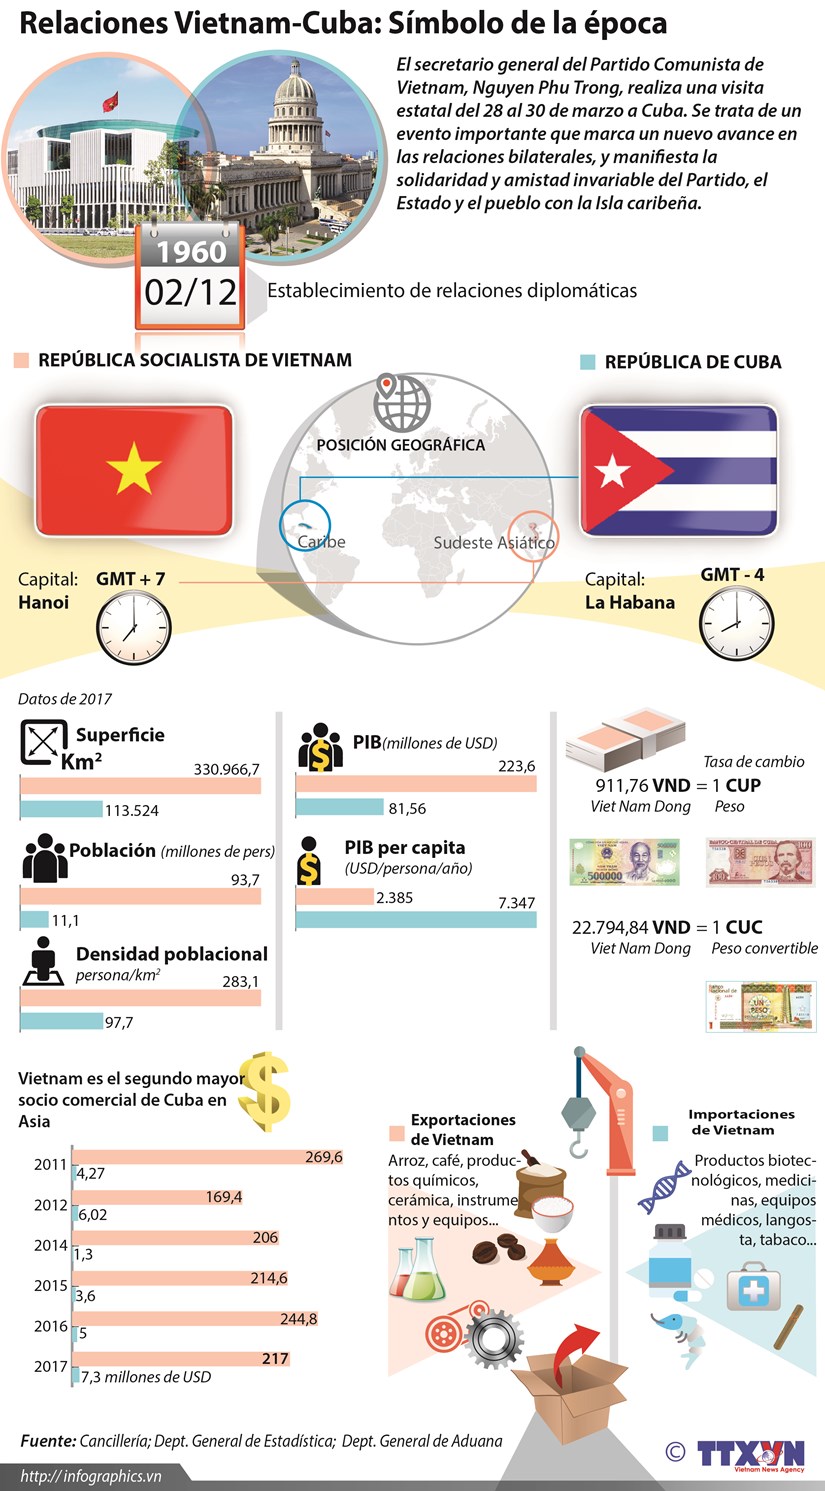 Relaciones Vietnam-Cuba: Simbolo de la epoca hinh anh 1